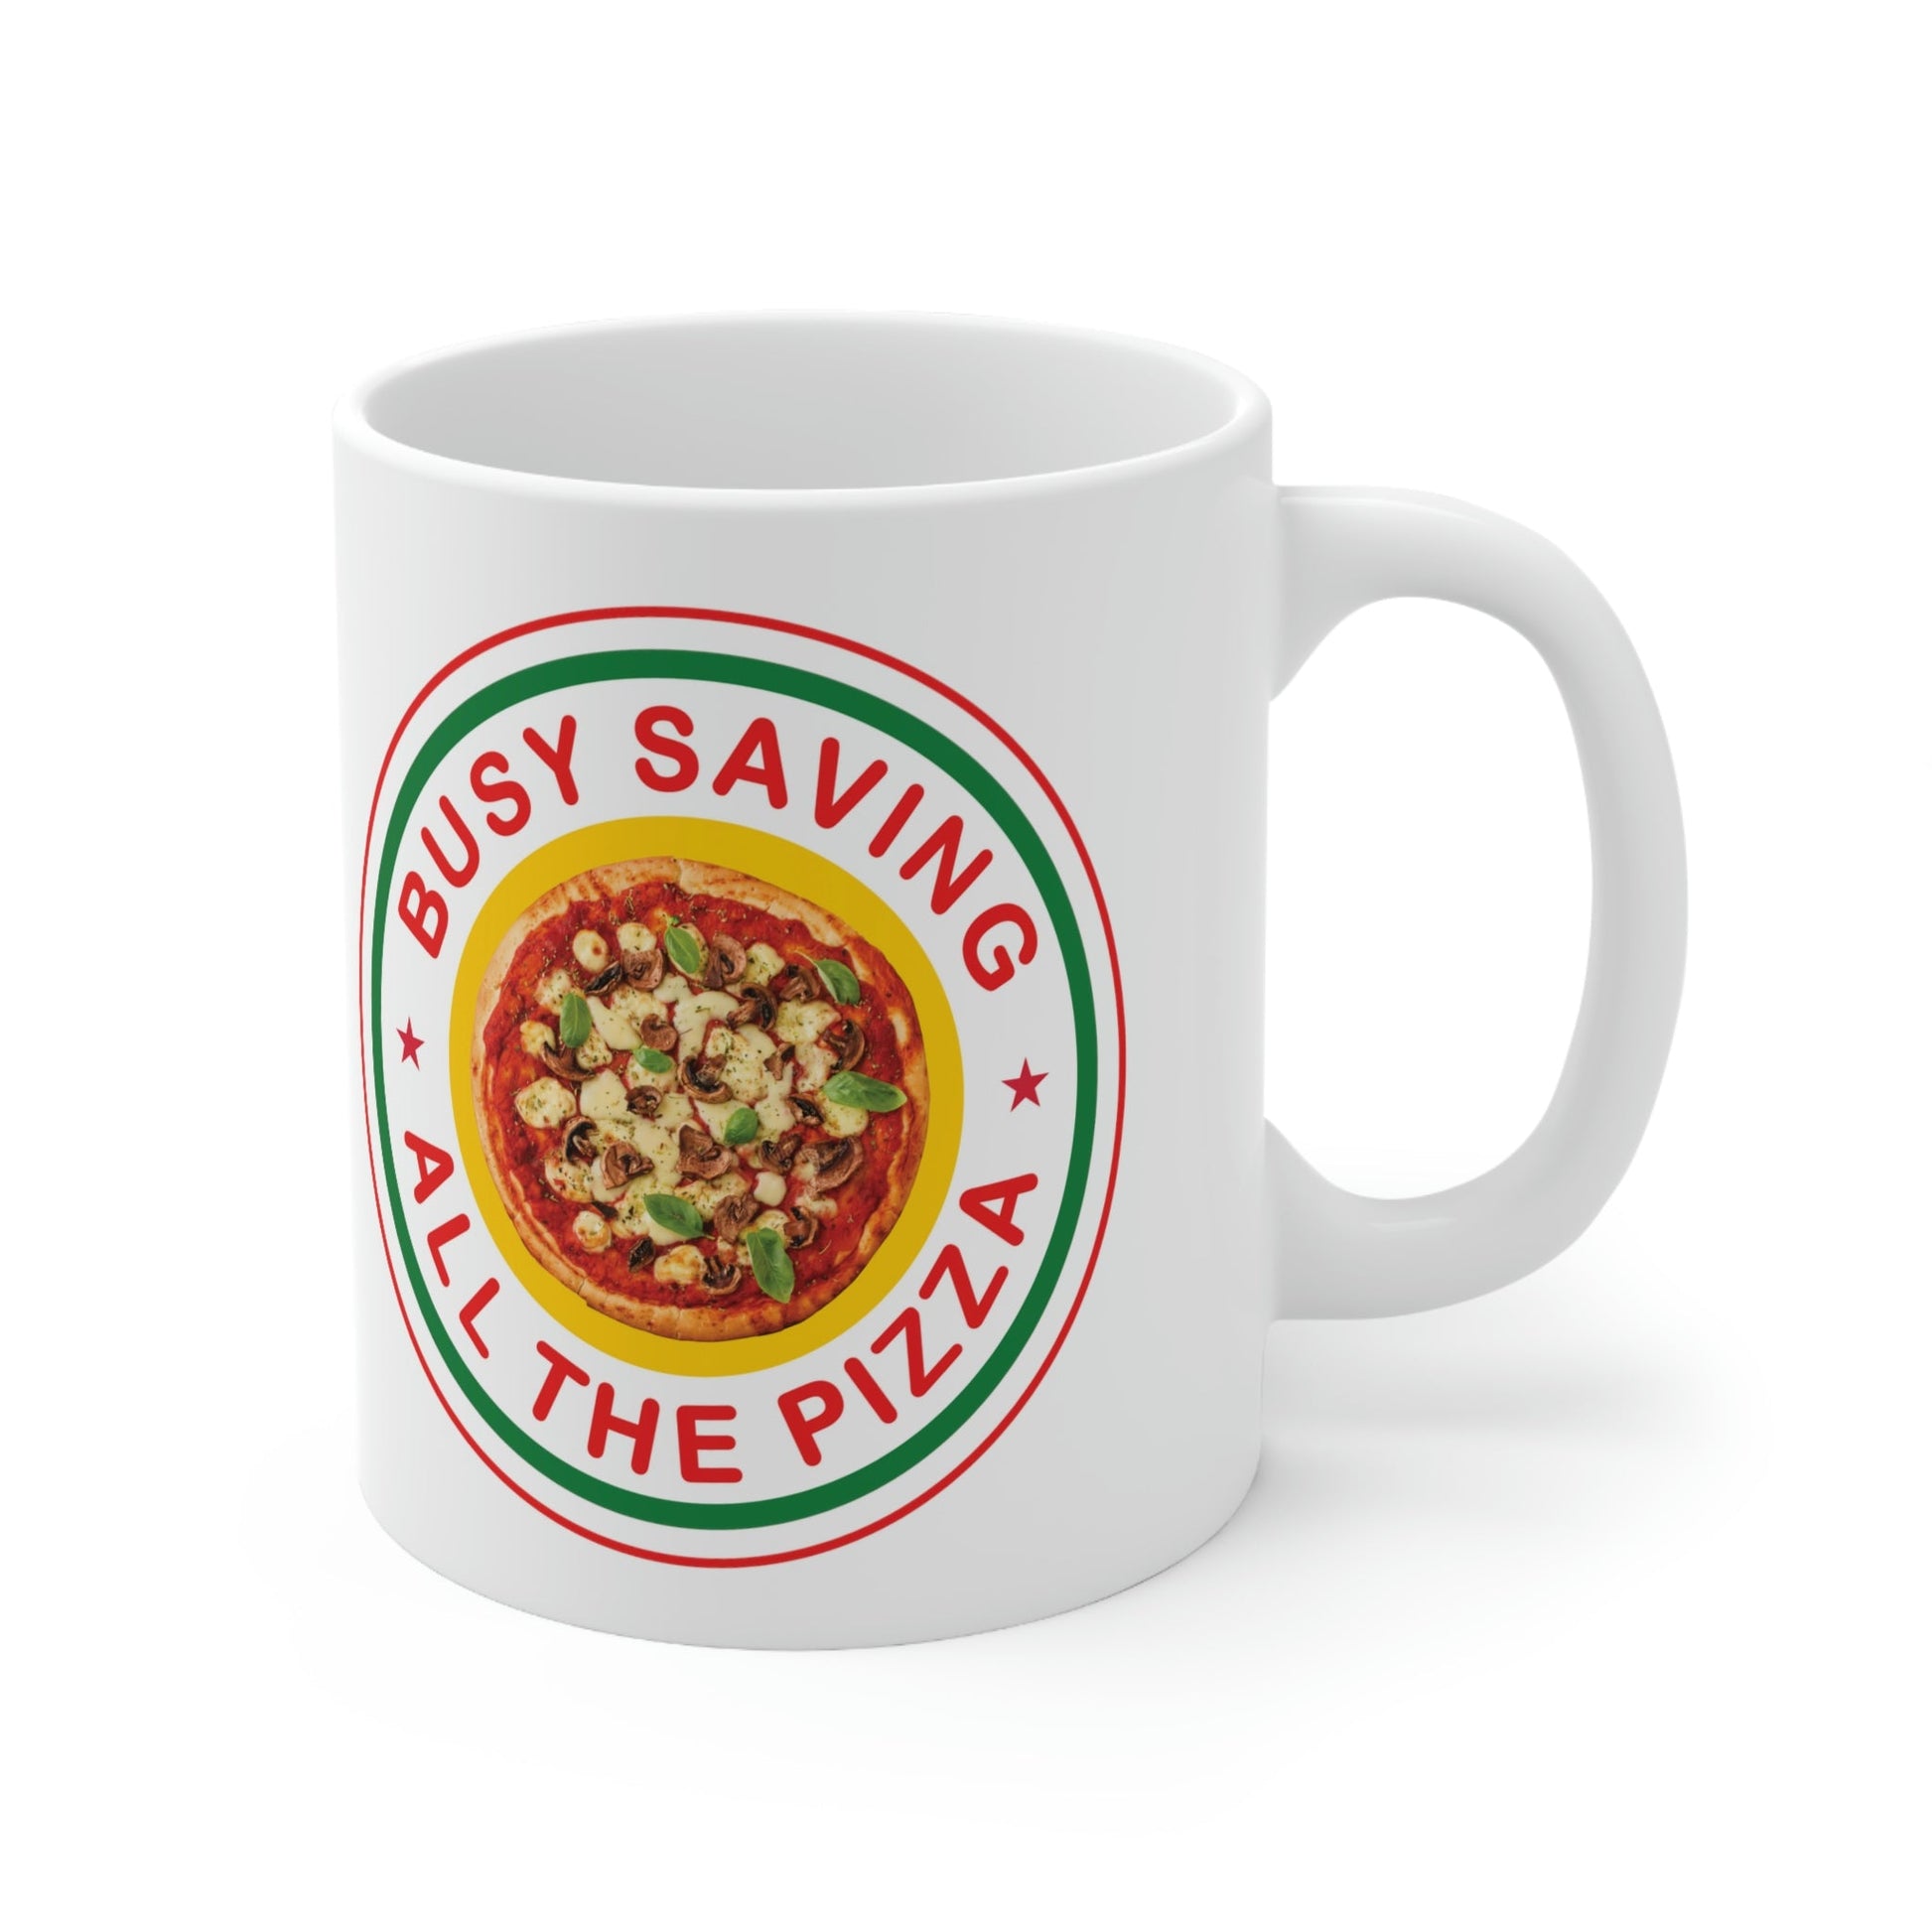 Busy Saving All The Pizza Food Lover Ceramic Mug 11oz Ichaku [Perfect Gifts Selection]